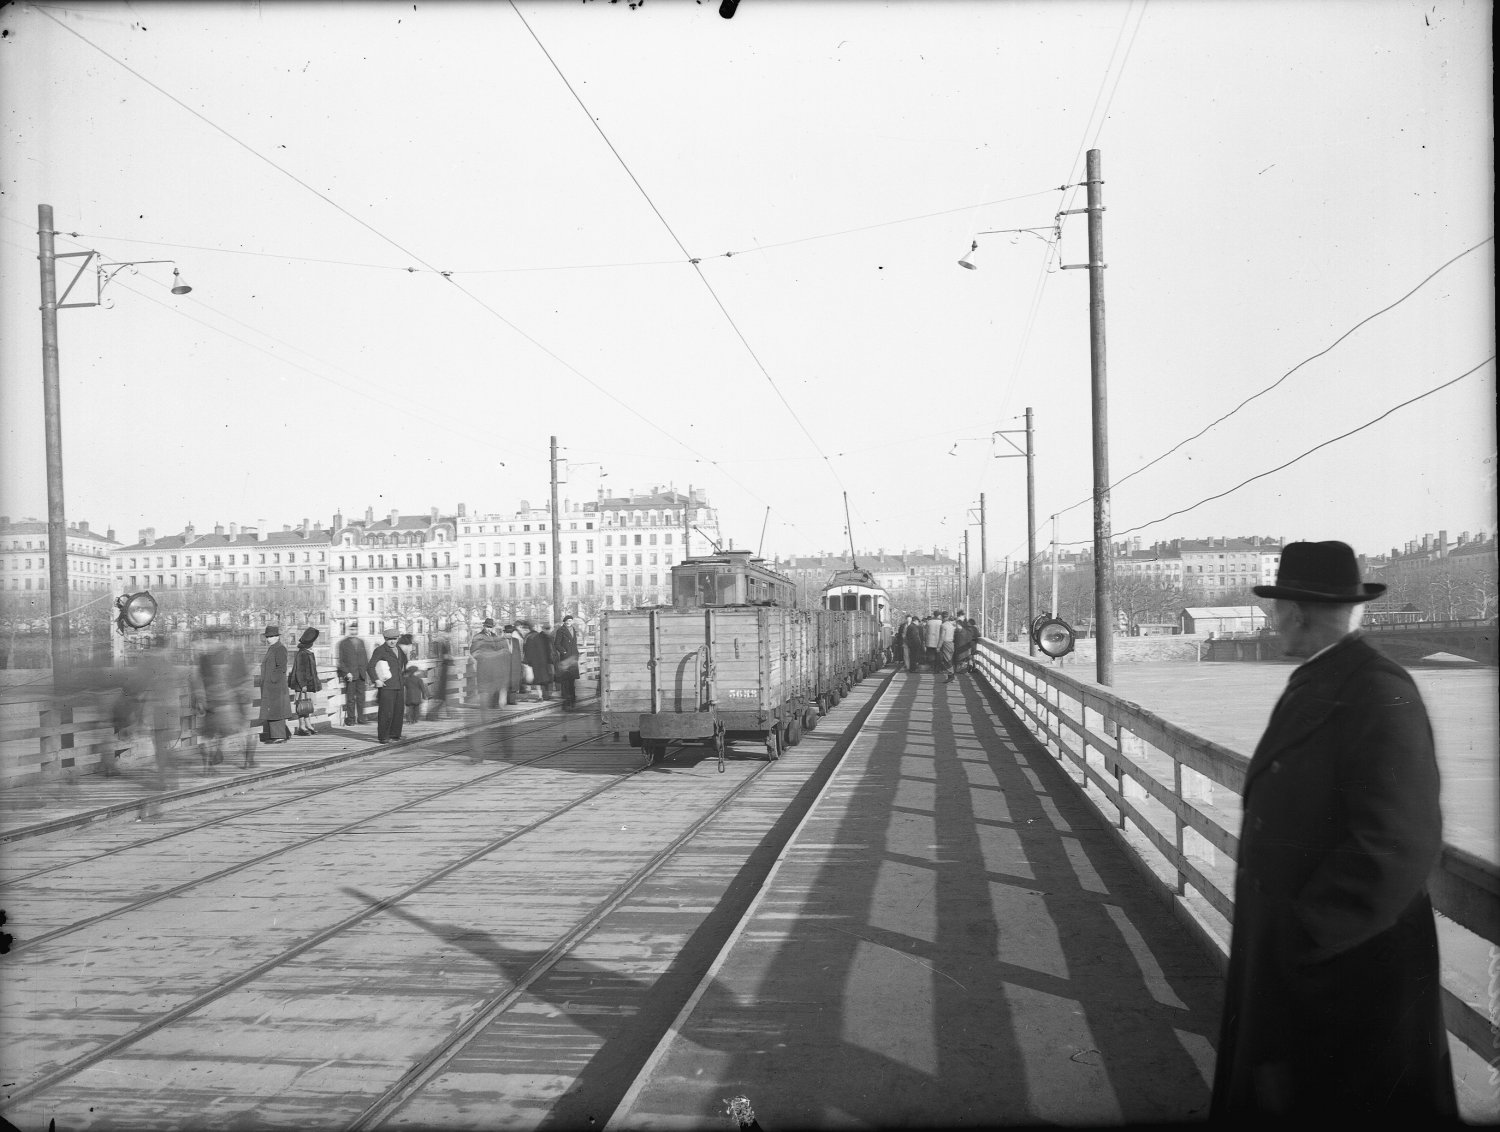 [Trafic sur le pont du Bâtiment : tramways, wagons, piétons (13 février 1945)]